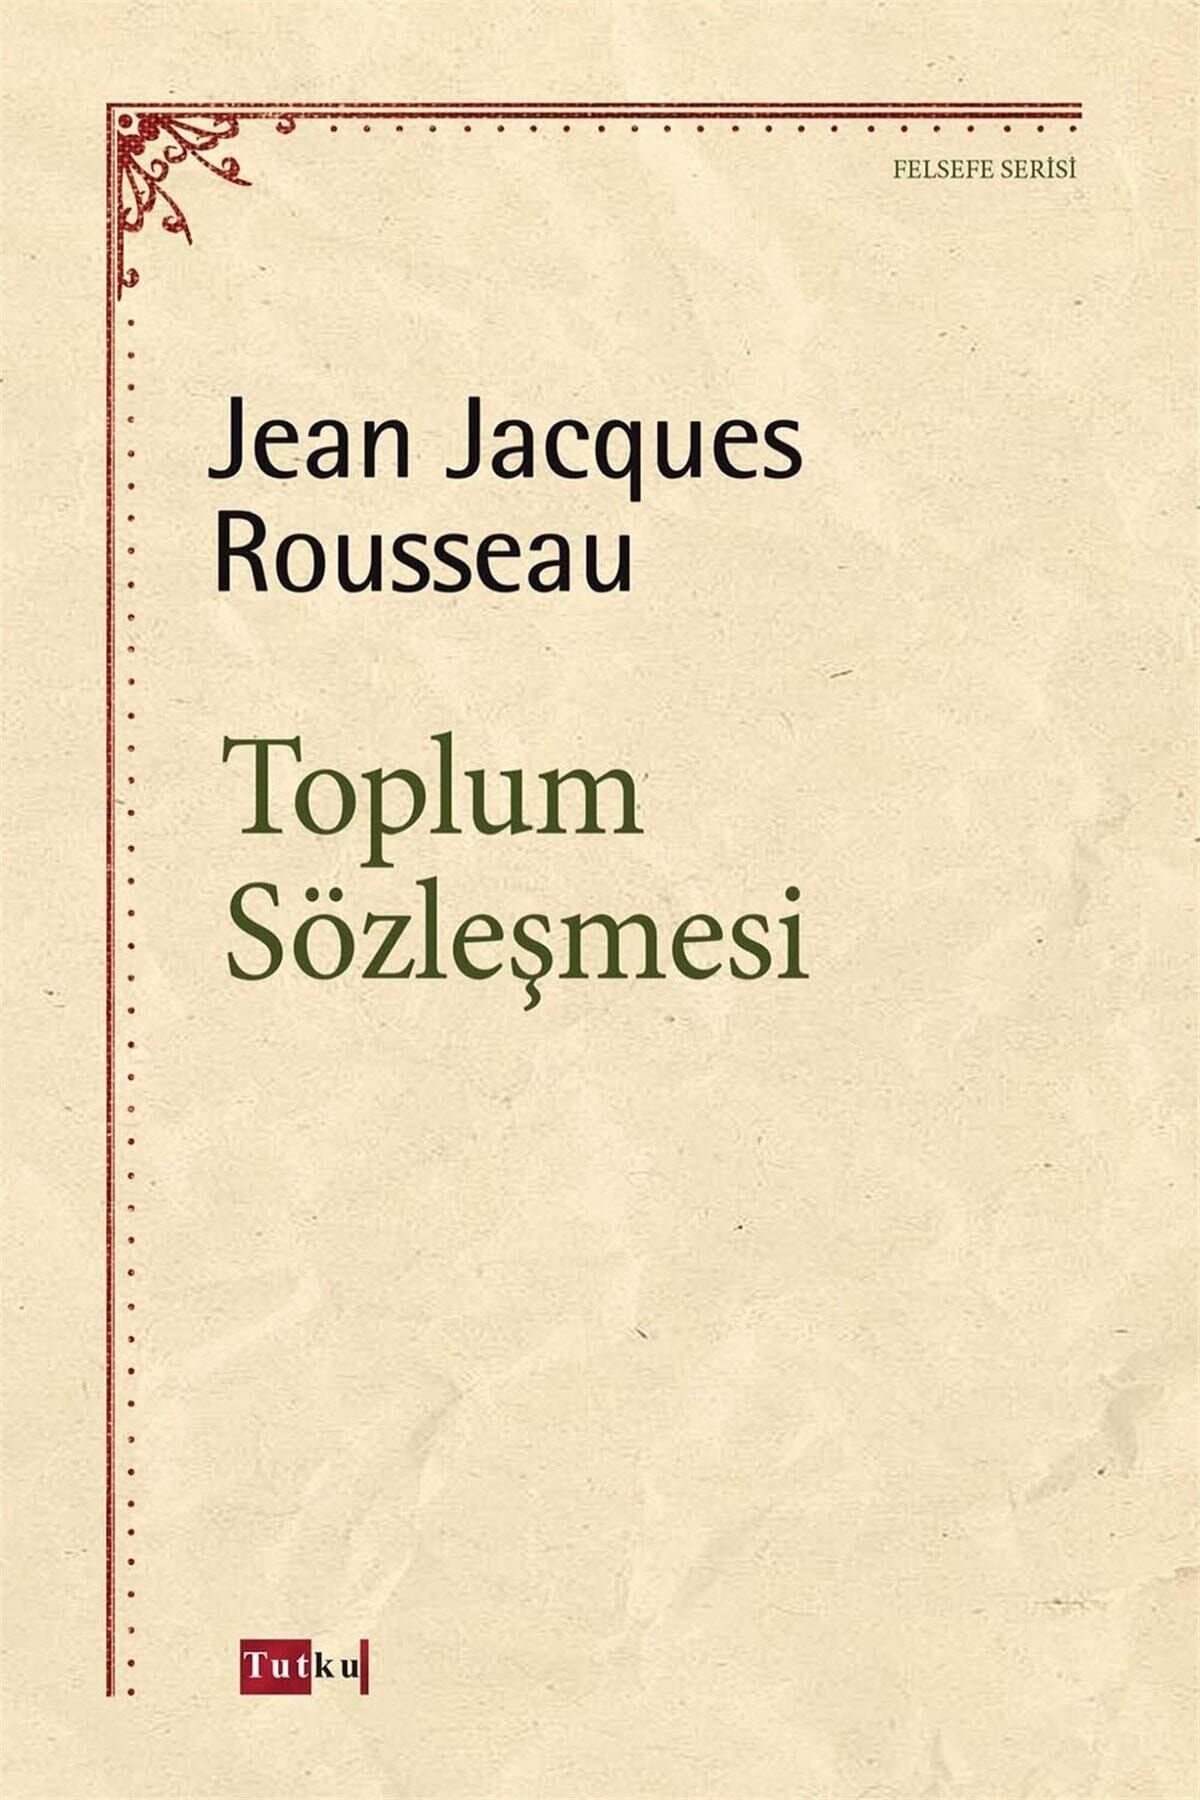 Tutku Yayınevi Toplum Sözleşmesi - Jean Jacques Rousseau, Felsefe, Psikoloji